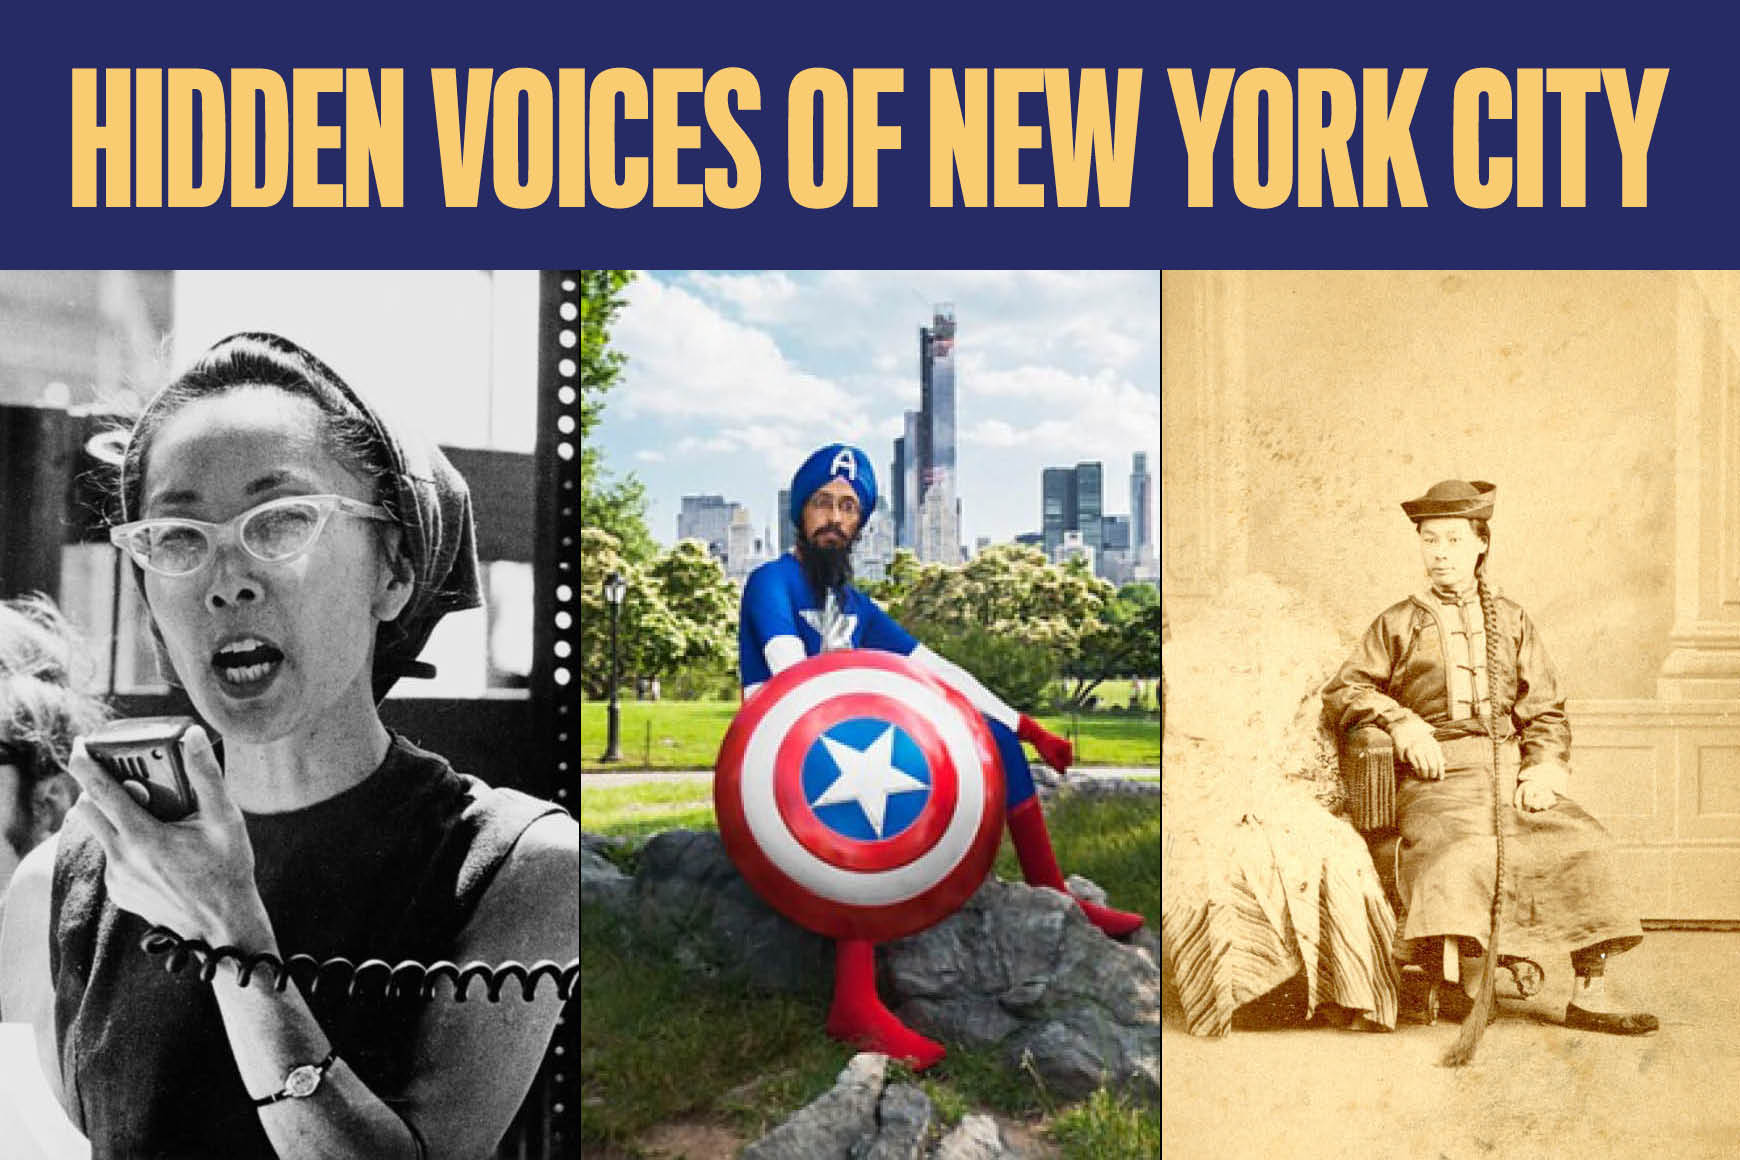 그래픽에는 여성 3명과 남성 2명의 이미지가 포함된 뉴욕시의 숨겨진 목소리(Hidden Voices of New York City)라고 적혀 있습니다.